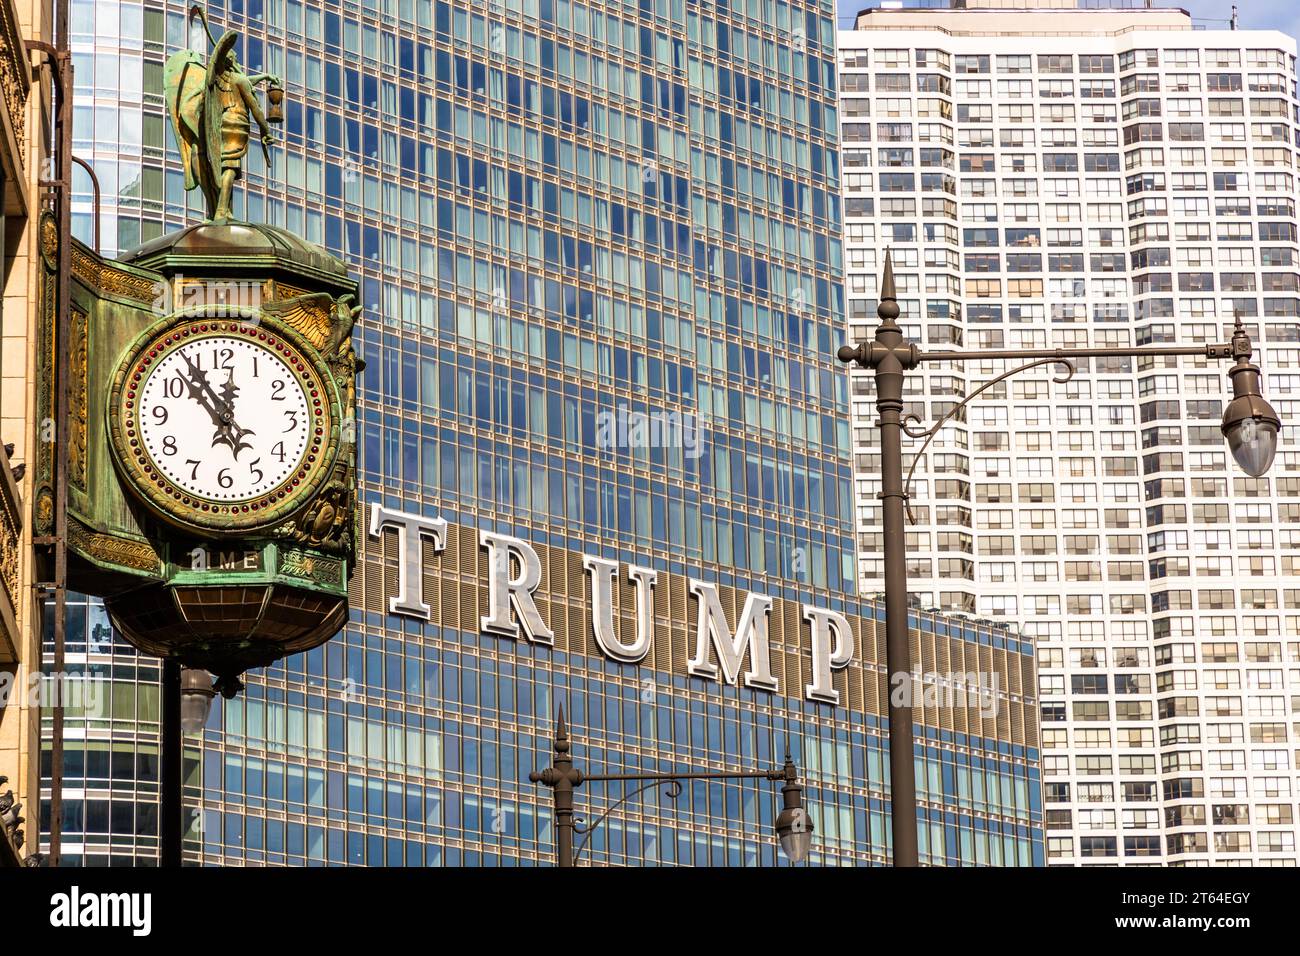 L'horloge du Jewelers Building montre juste avant midi. En arrière-plan, vous pouvez voir le lettrage Trump de Trump Tower. Chicago, États-Unis Banque D'Images